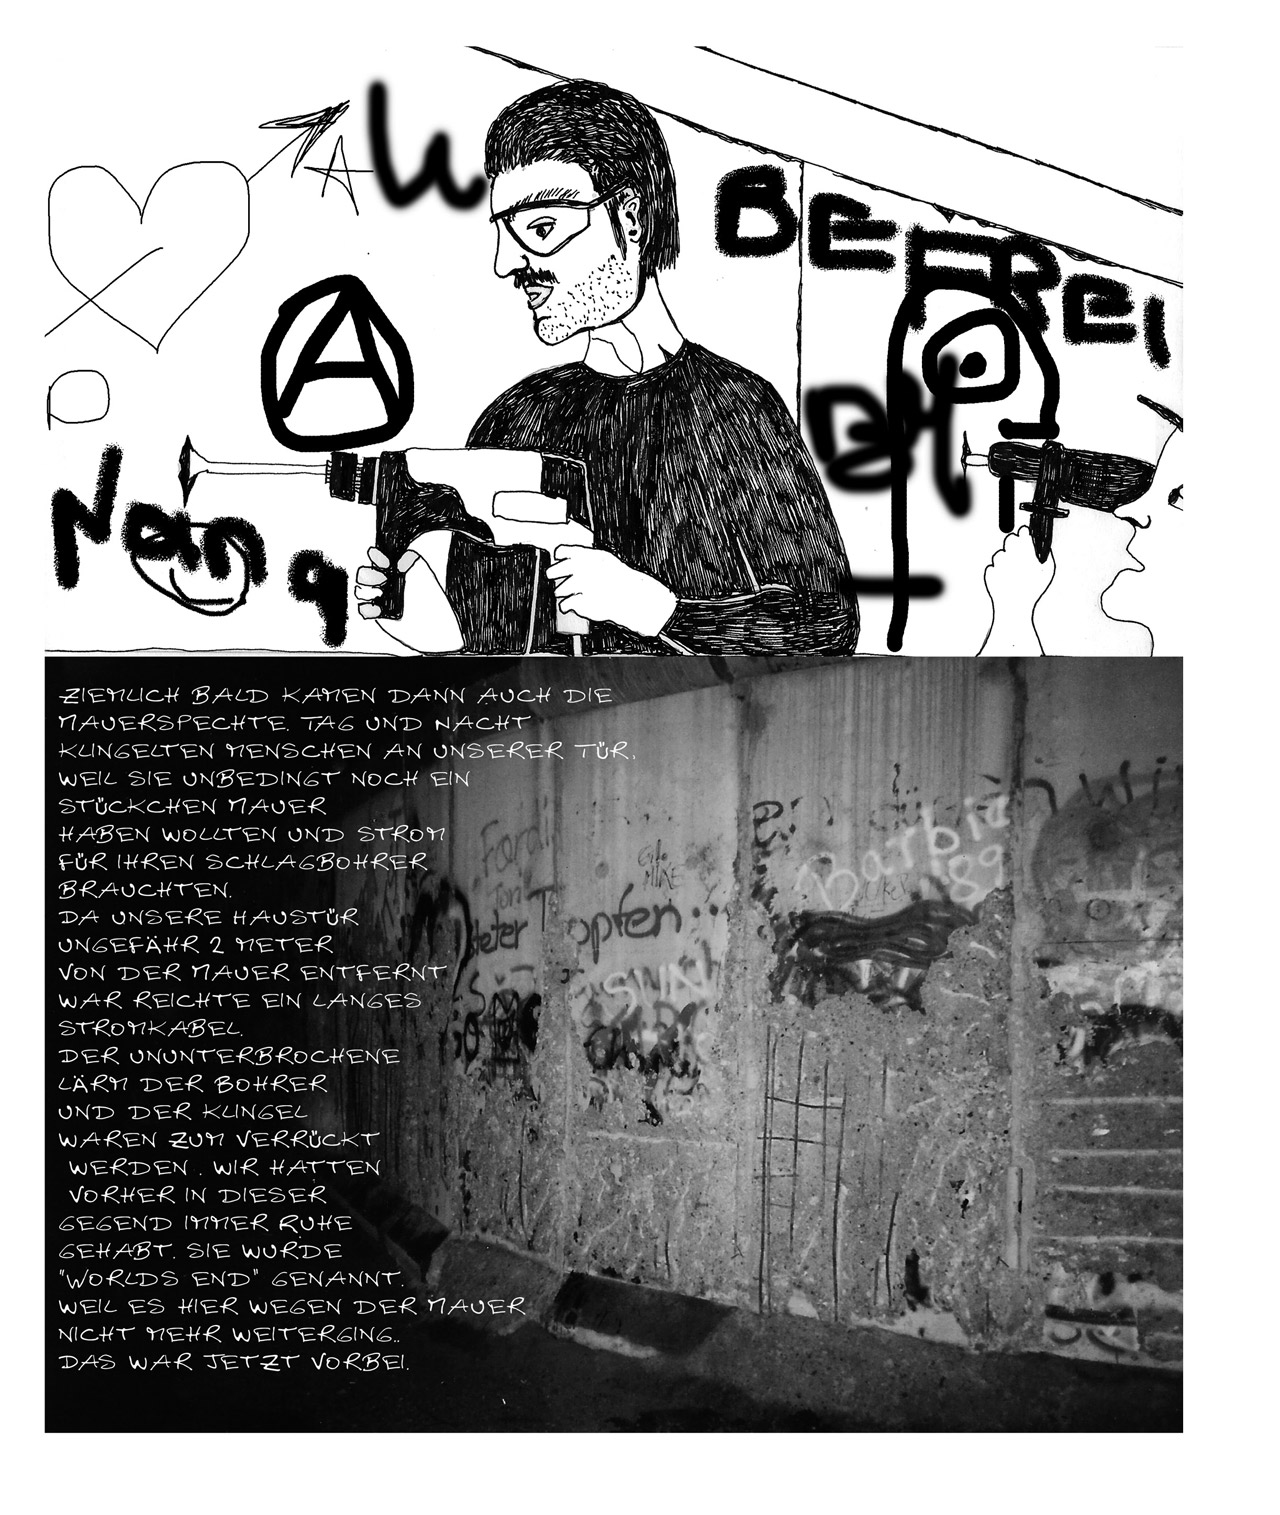 Szenen aus der Graphic Novel "Die heitere Kunst der Rebellion" von Danielle de Piciotto